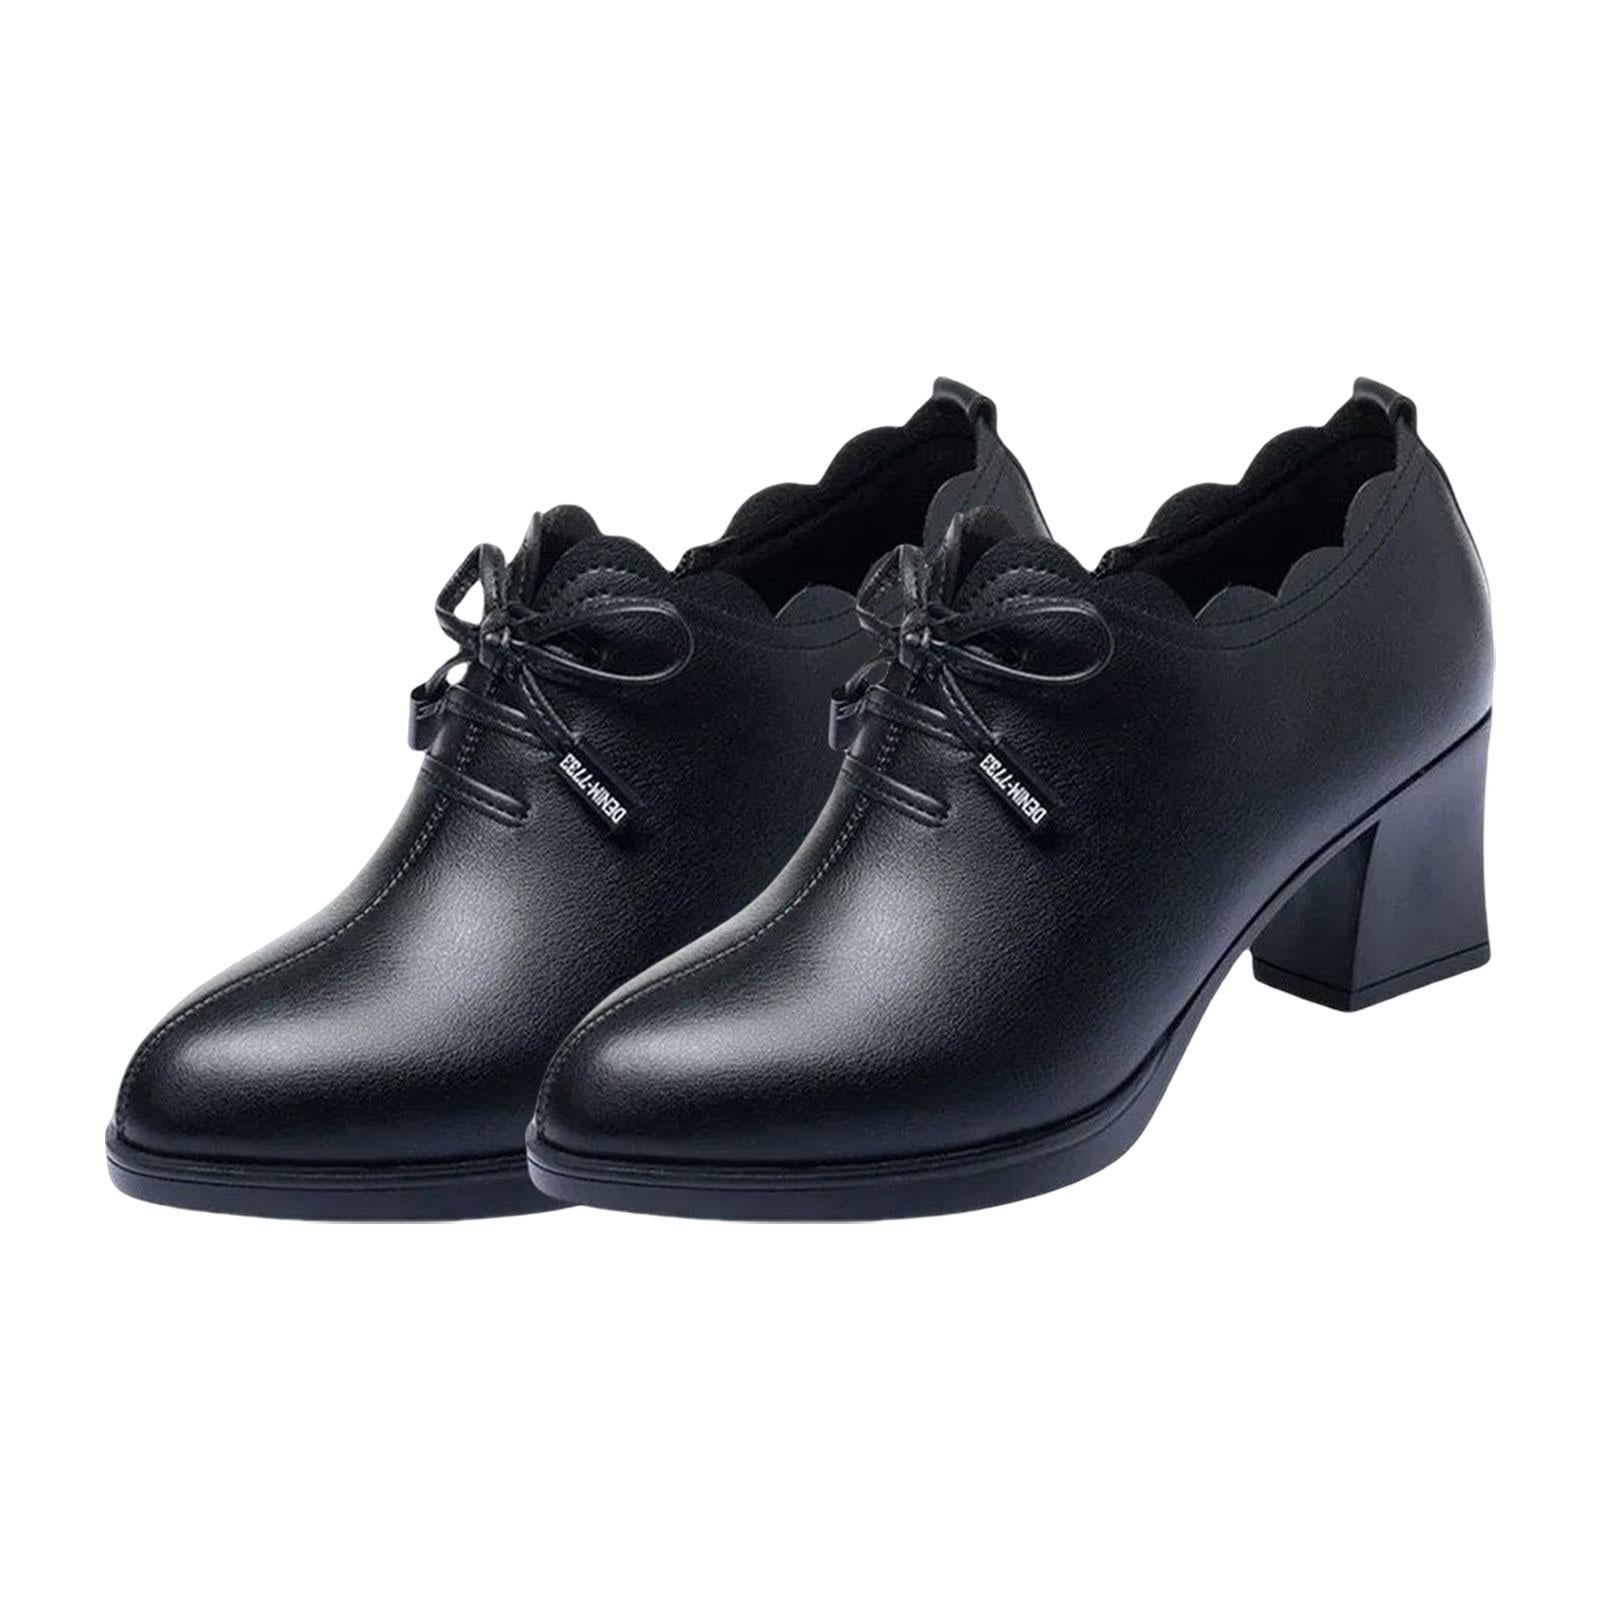 Black buckle on top slip on low heel dress shoe + FREE SHIPPING | Womens  heel dress shoes online 2634WS